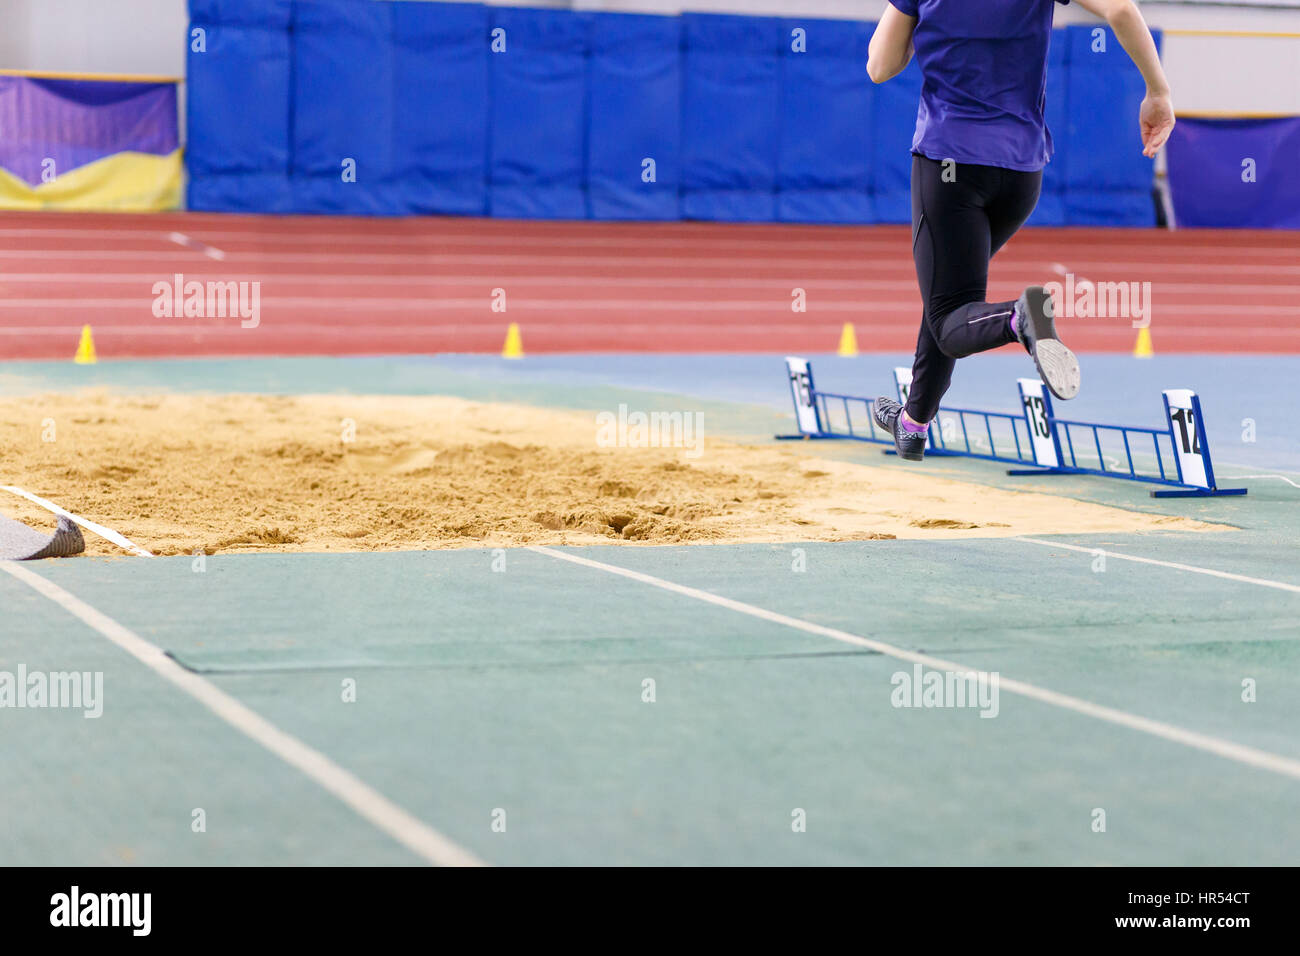 Sportive un salto nella buca di sabbia sul salto triplo concorrenza in pista e sul campo campionato Foto Stock